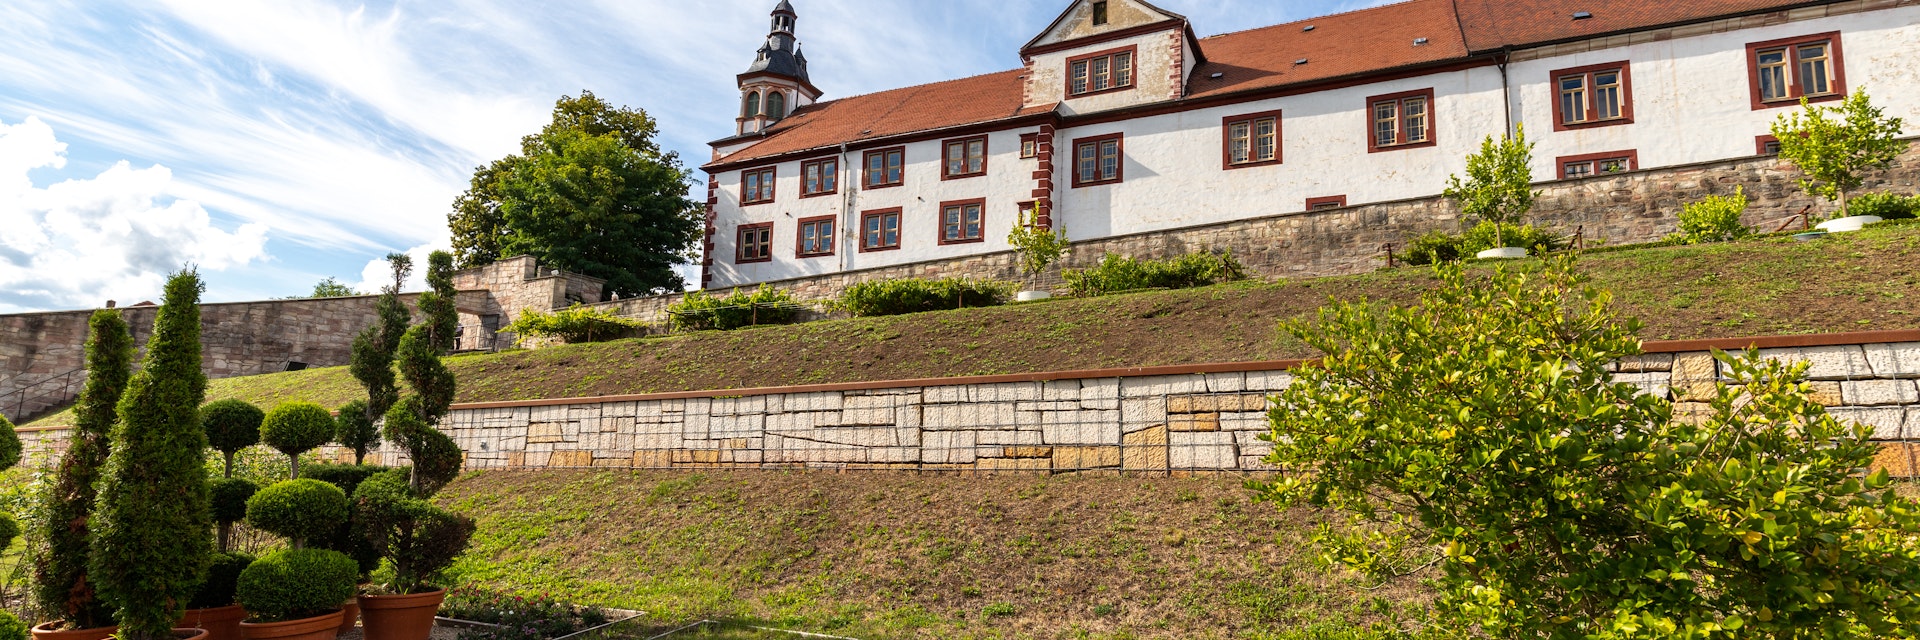 Wilhelmsburg Castle in Schmalkalden.